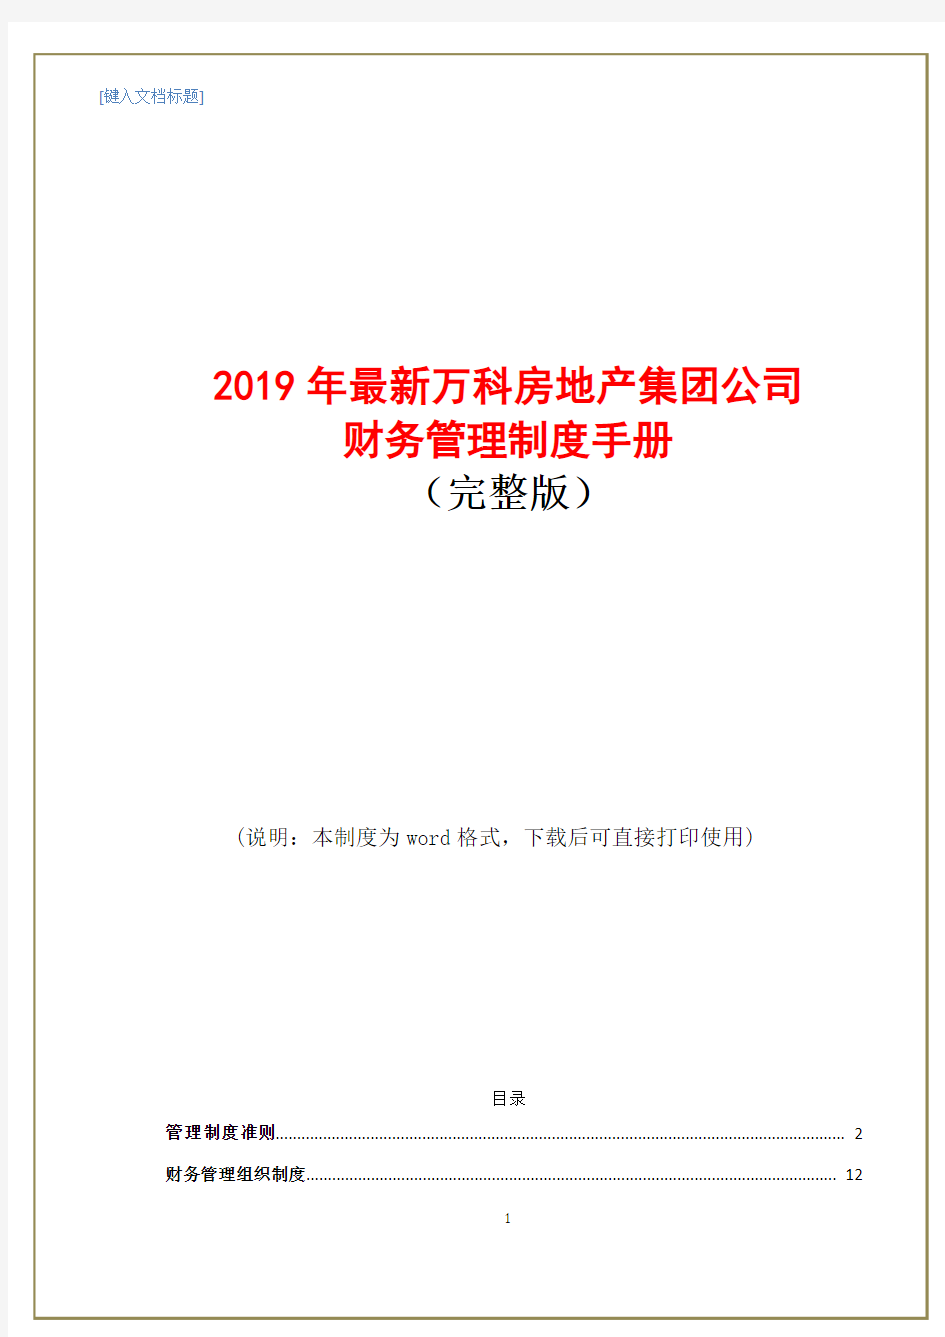 2019年最新万科房地产集团公司财务管理制度手册(完整版)